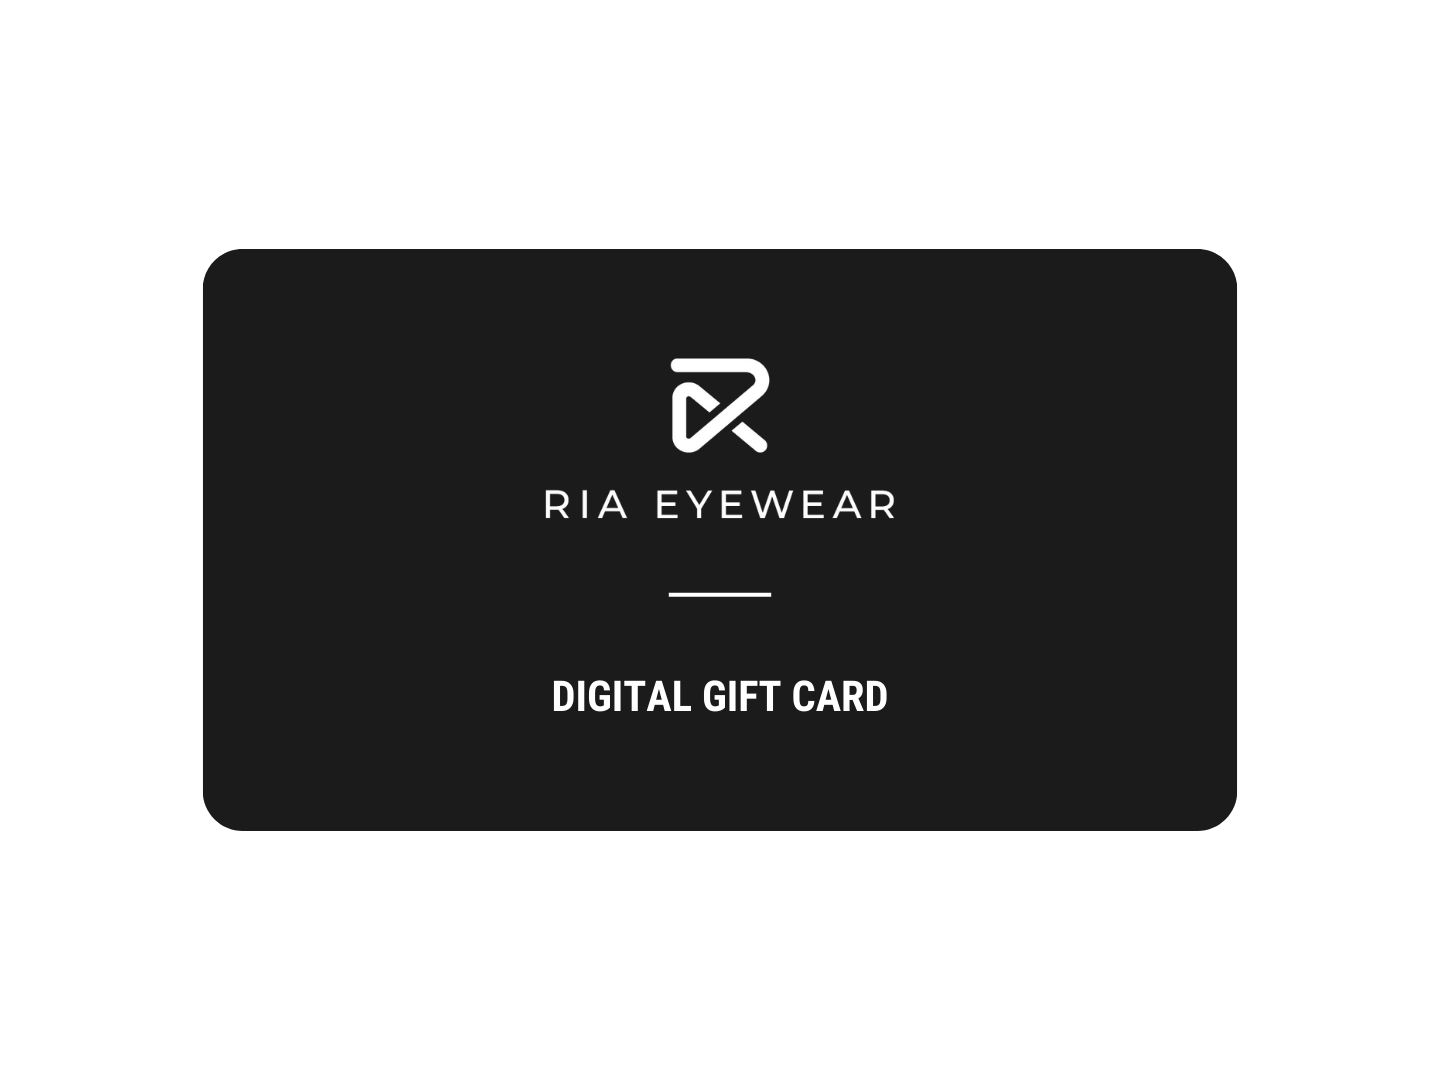 RIA Eyewear Digital Gift Card